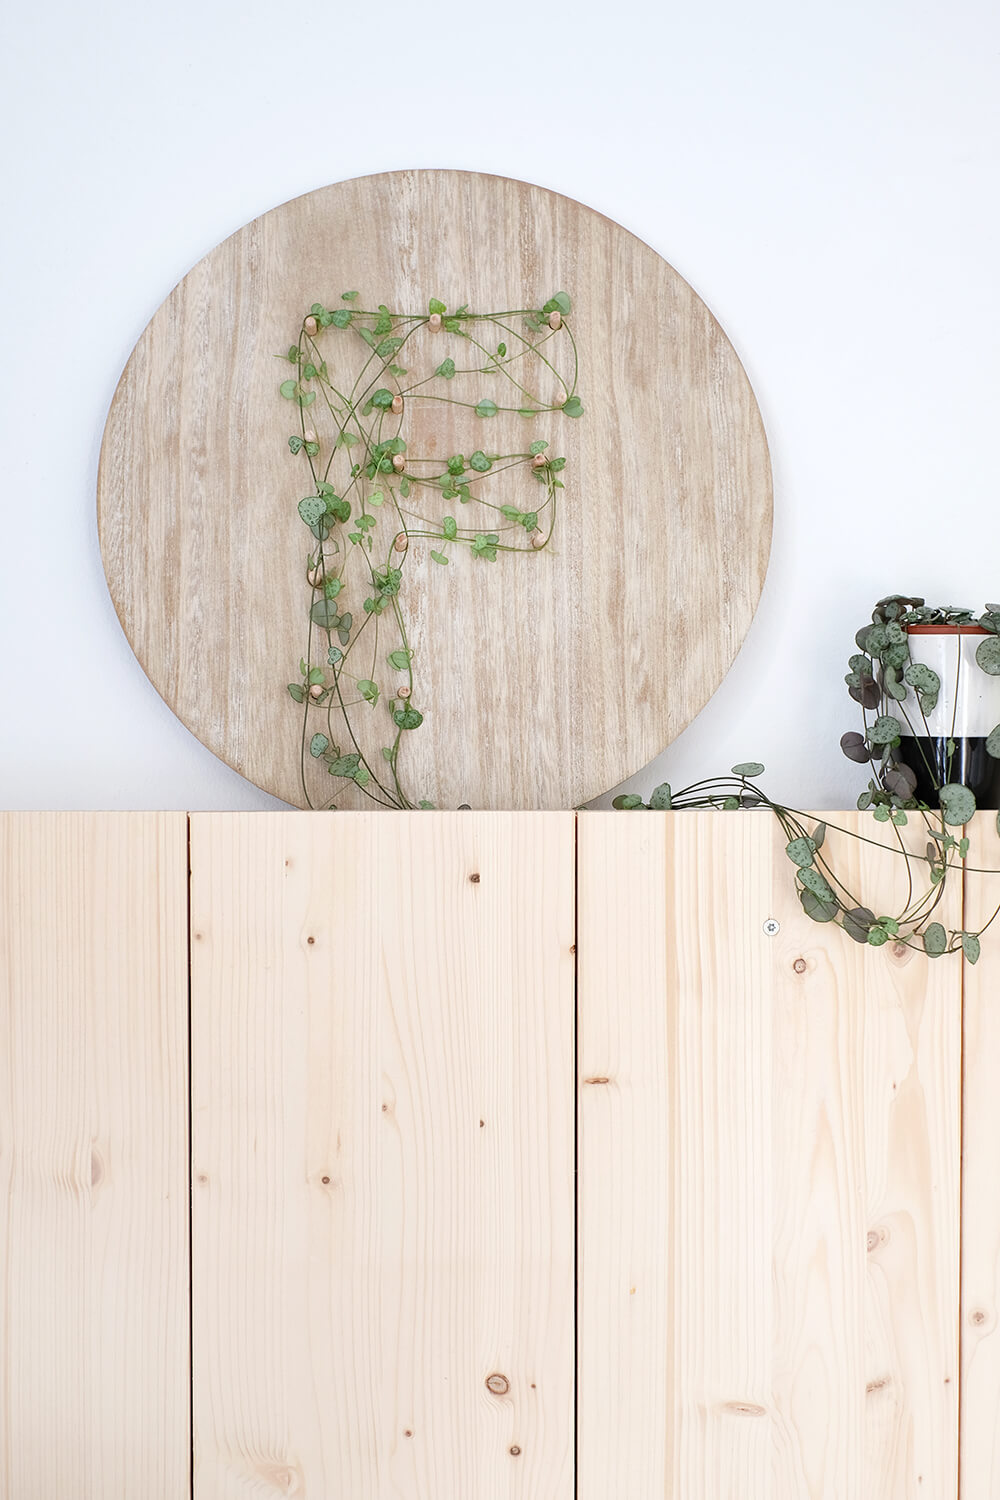 DIY Monogram auf Pflanzen und Holz als Geschenk für den Valentinstag, von Gingered Things